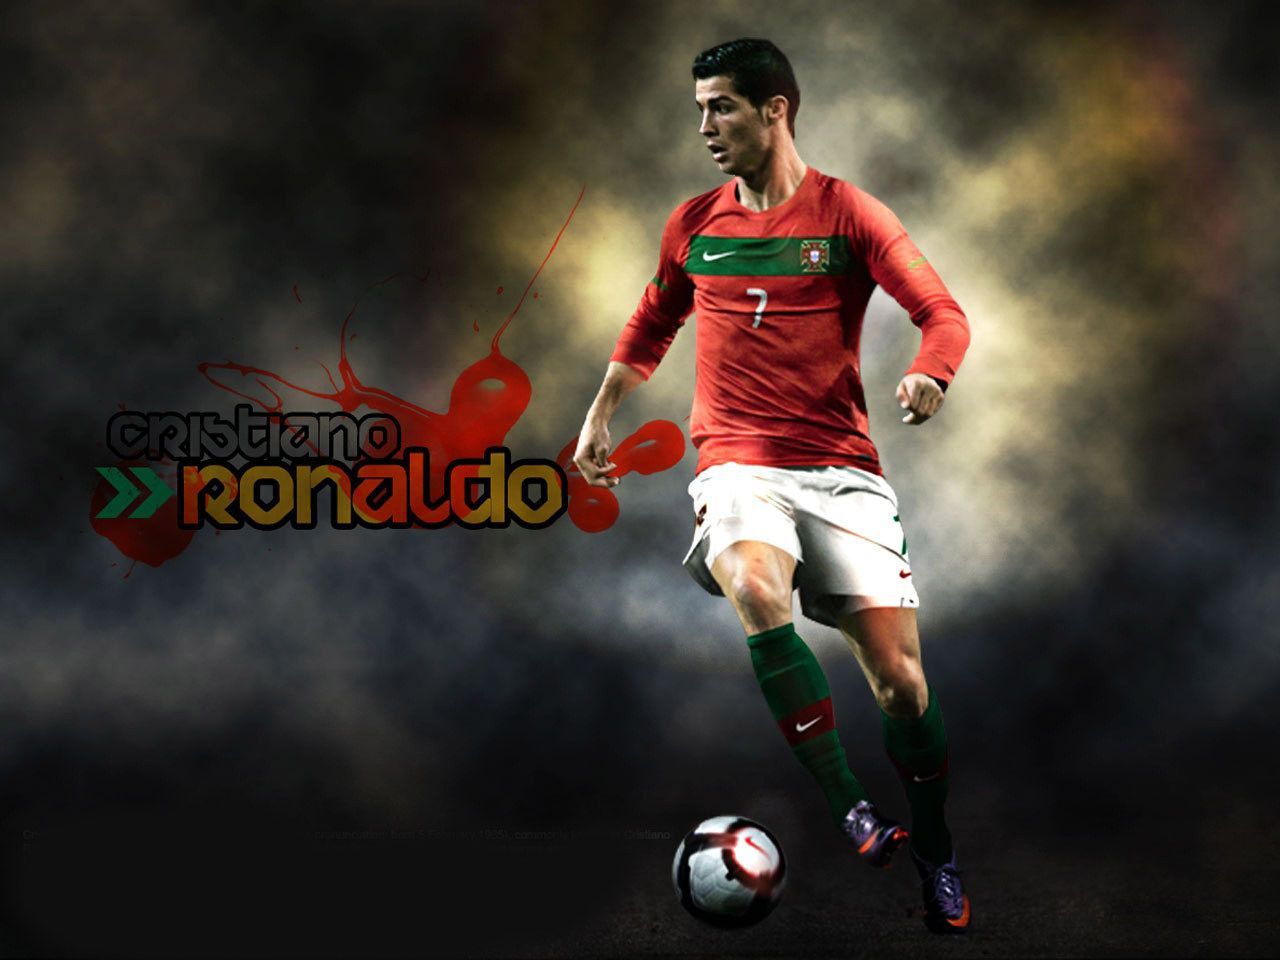 cristiano ronaldo soccer player 2012. Cristiano ronaldo, Ronaldo, Ronaldo soccer